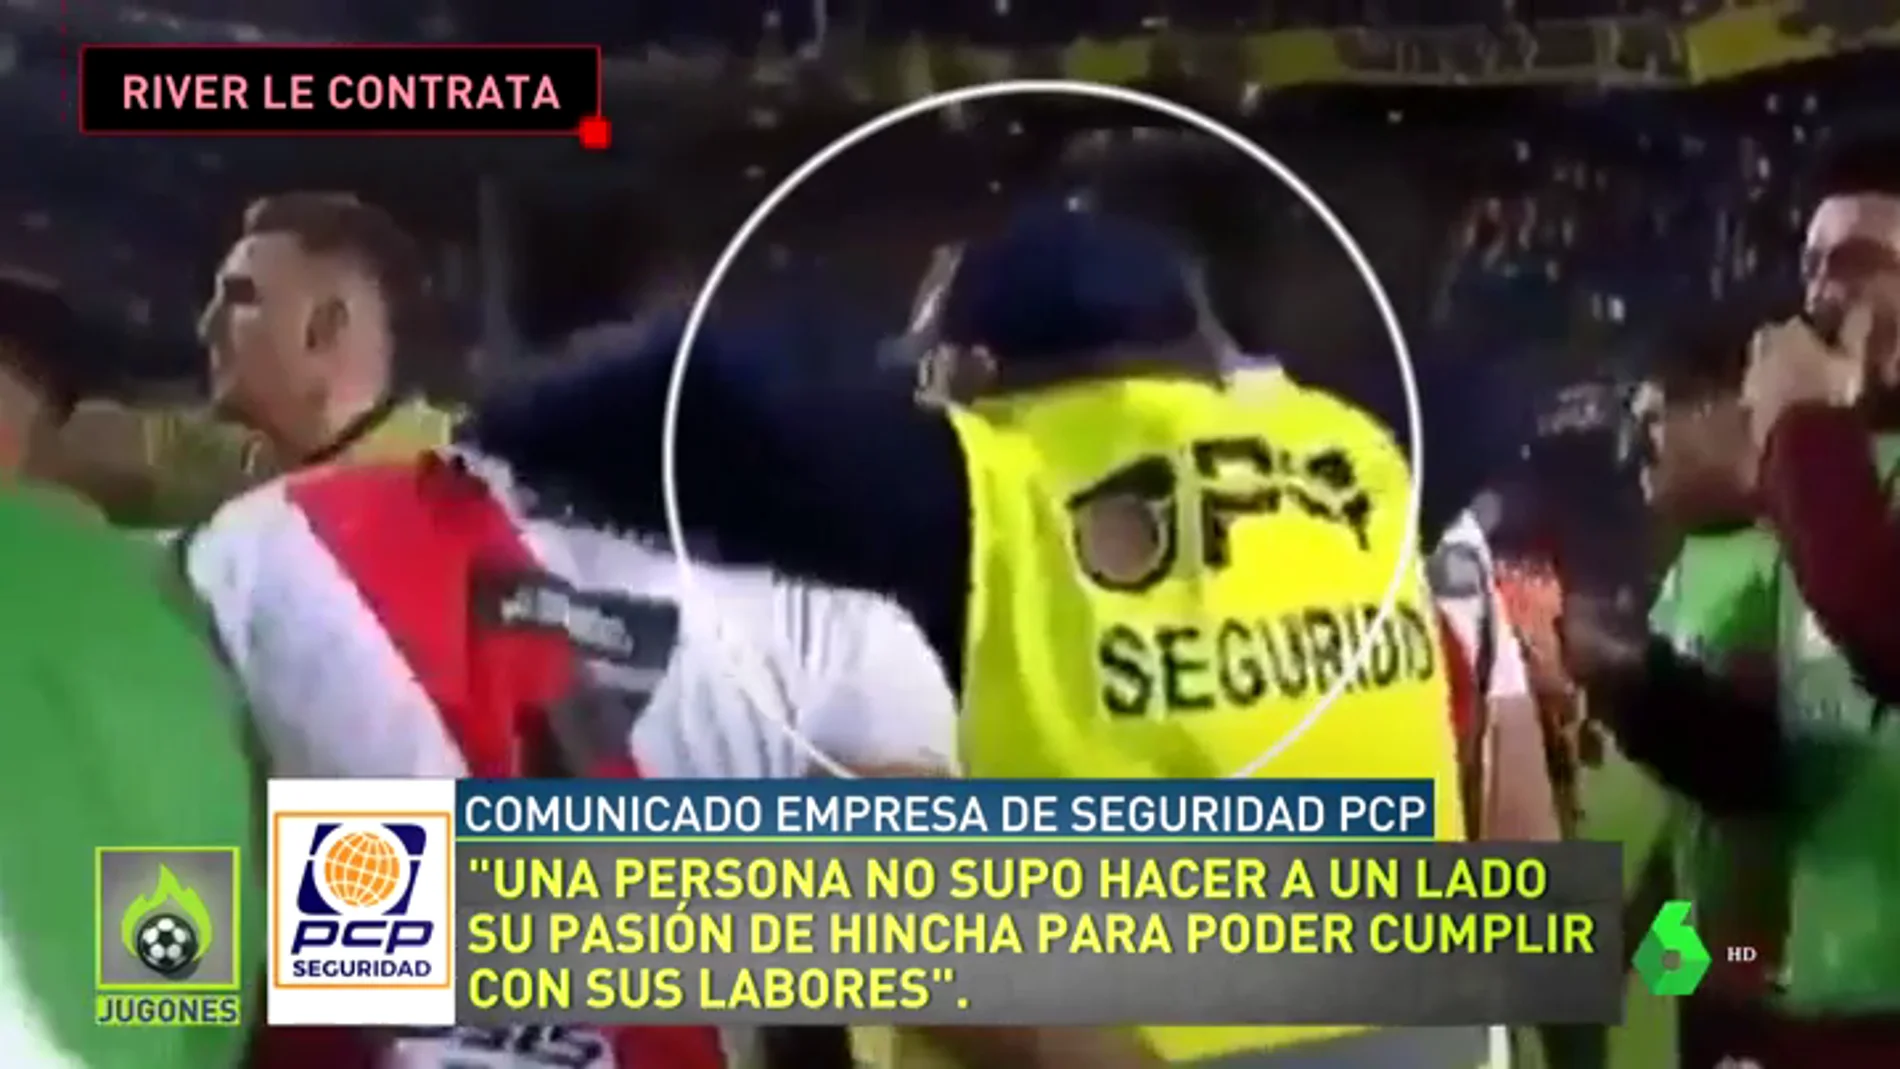 El miembro de seguridad despedido por Boca Juniors se entera en directo de que River Plate le ha contratado